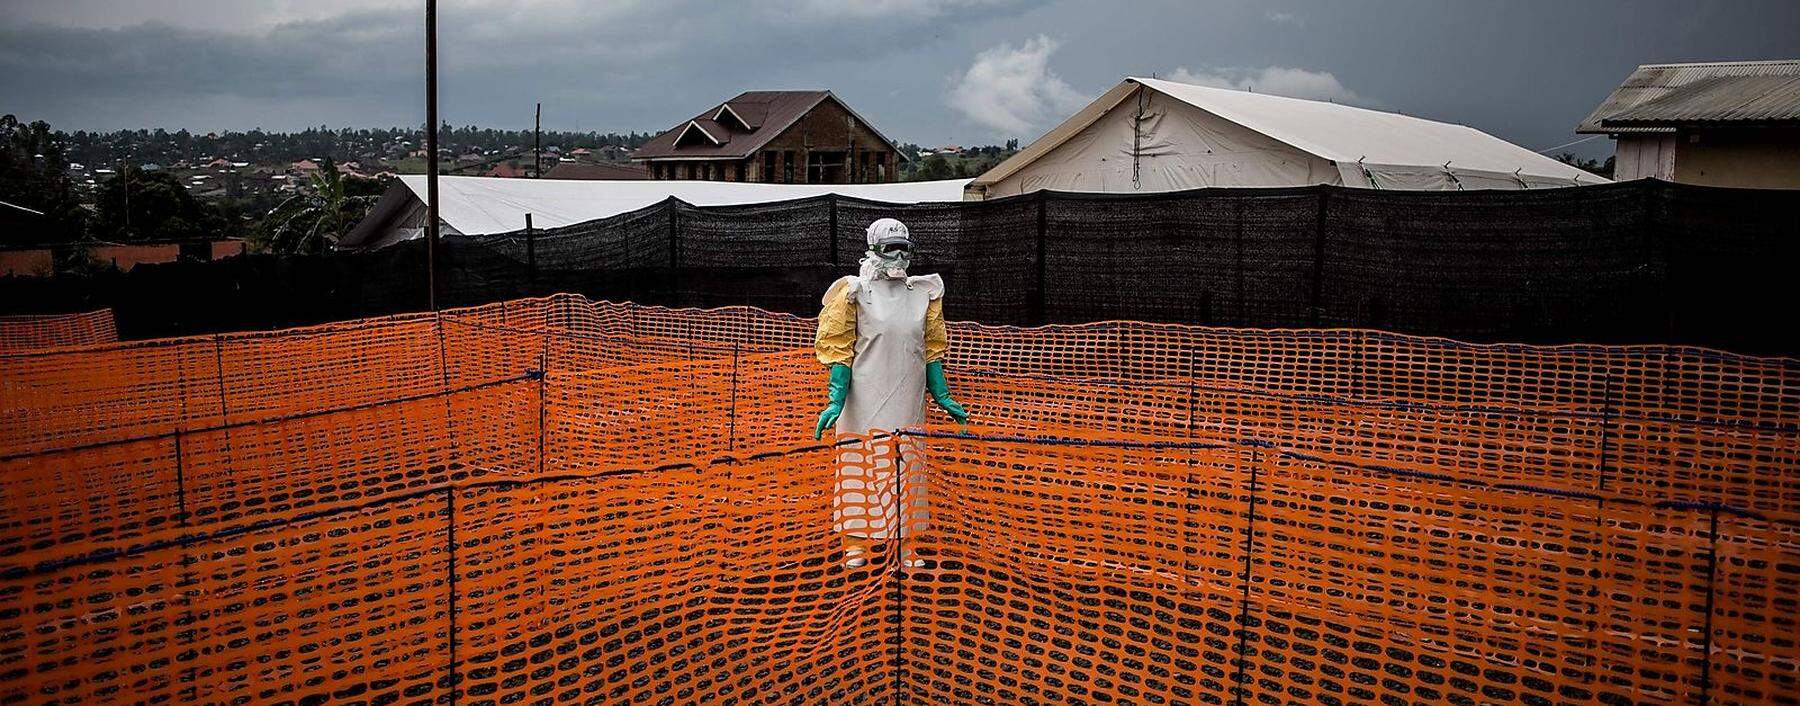 In der Demokratischen Republik Kongo wütet seit 2018 eine Ebola-Epidemie